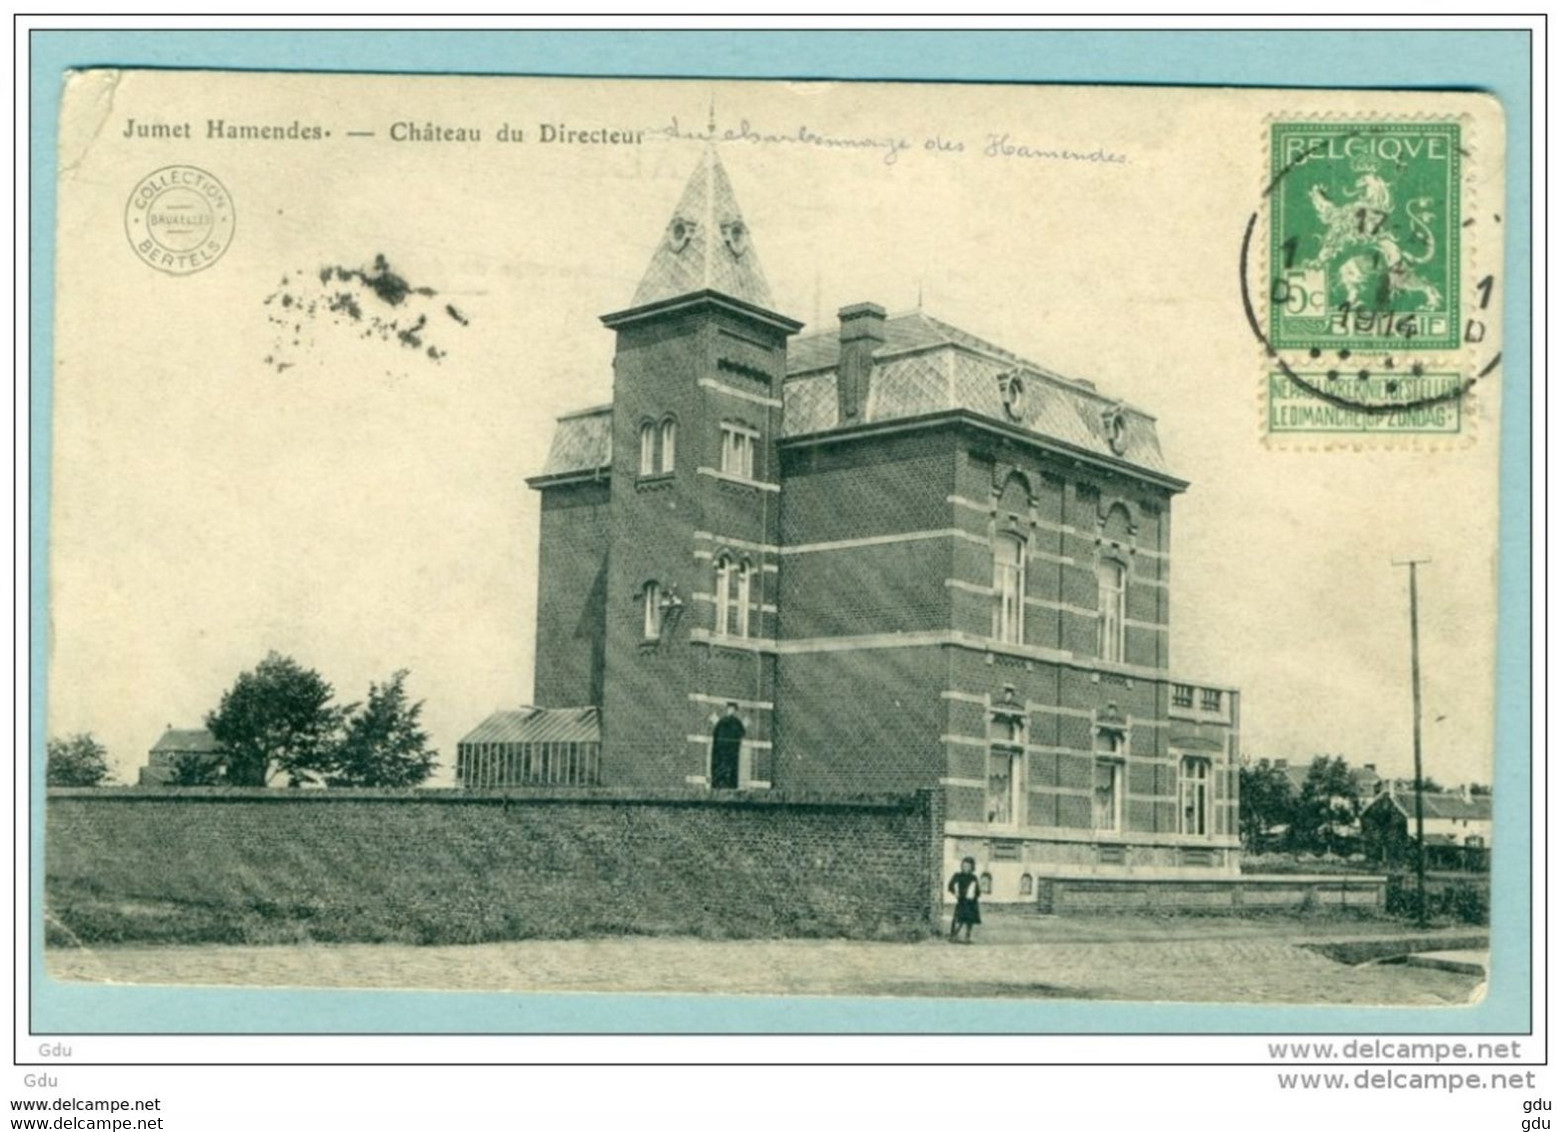 JUMET HAMENDES - Chateau Du Directeur - Charleroi